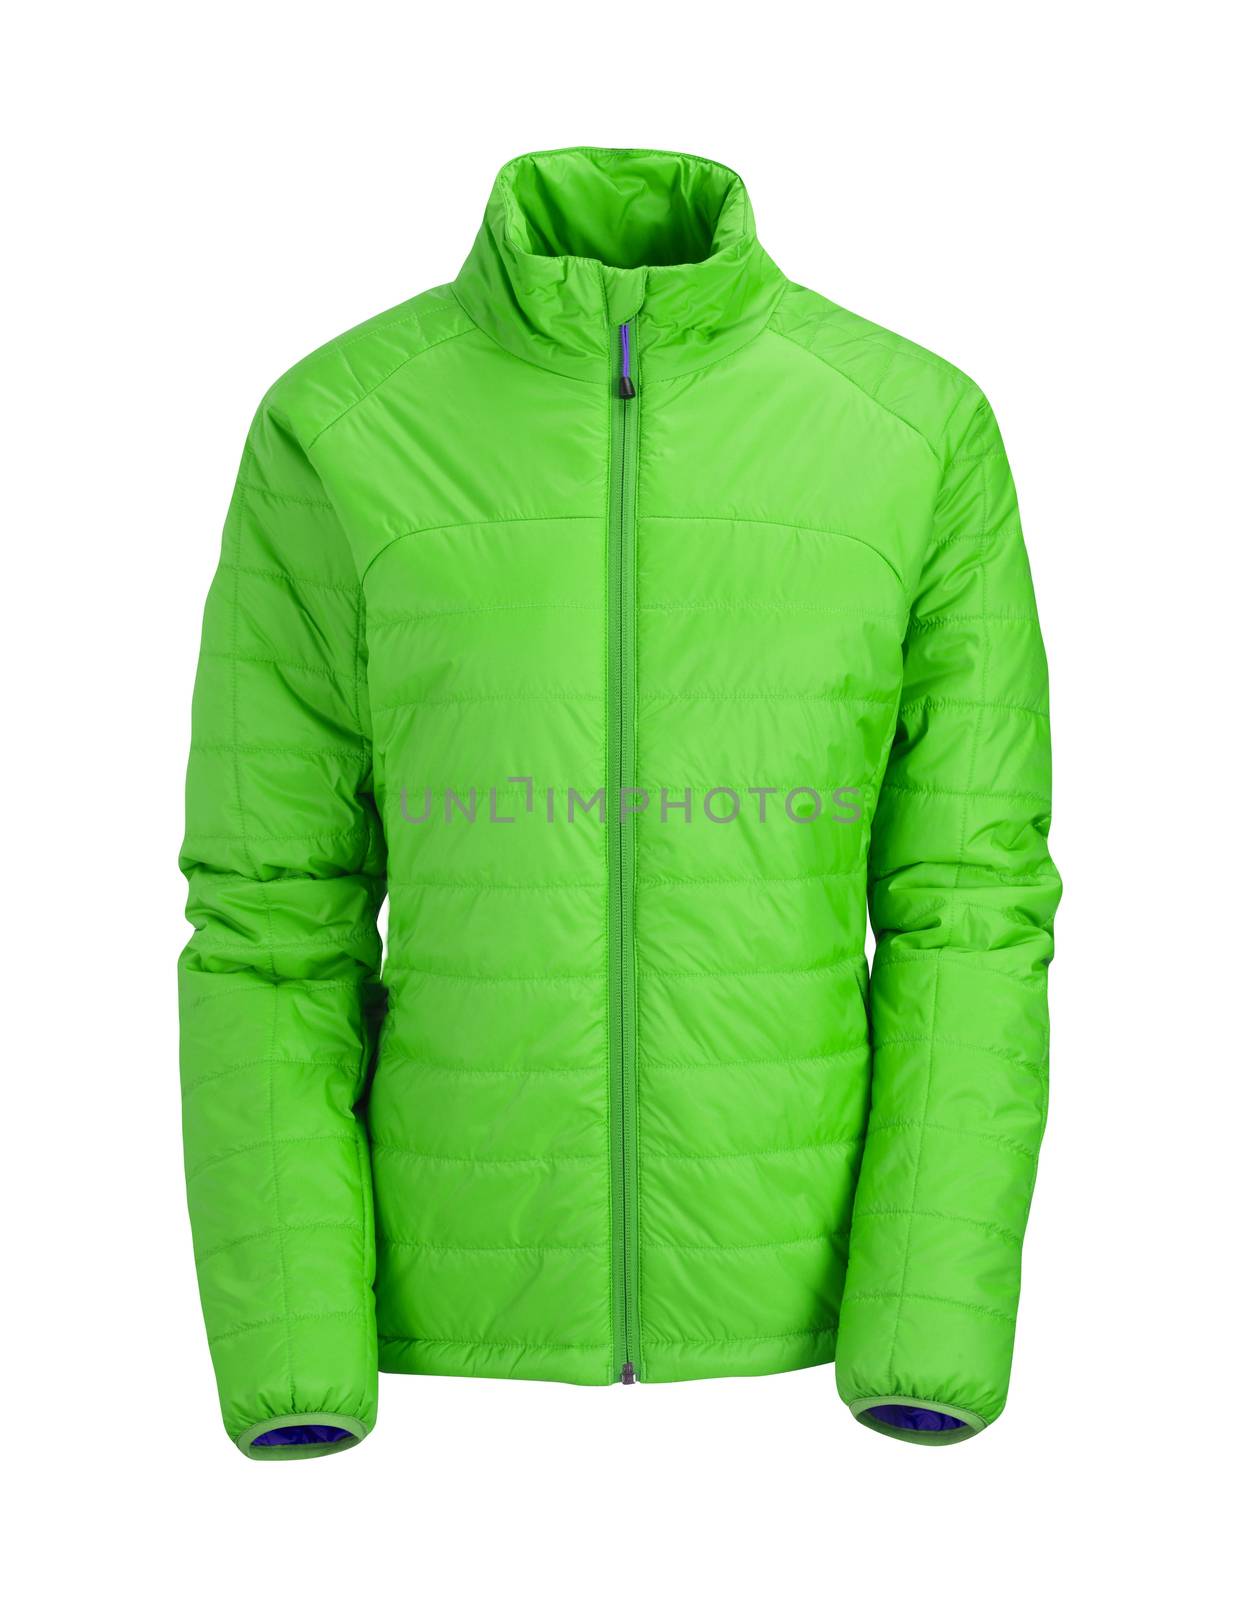 green jacket  isolated on white background